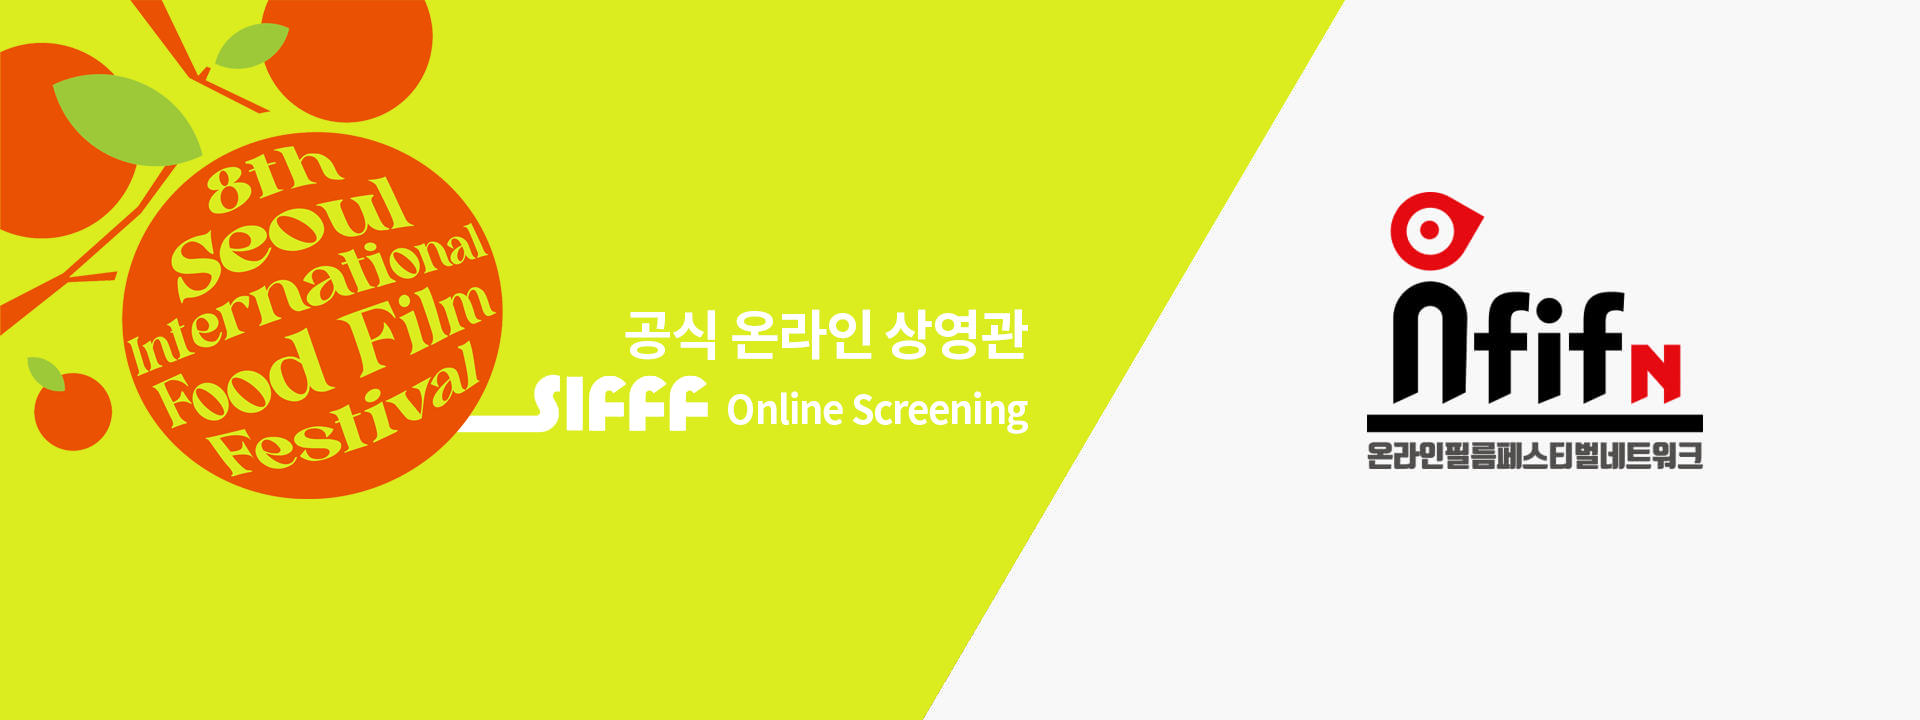 공식 온라인 상영관 SIFFF online Screening